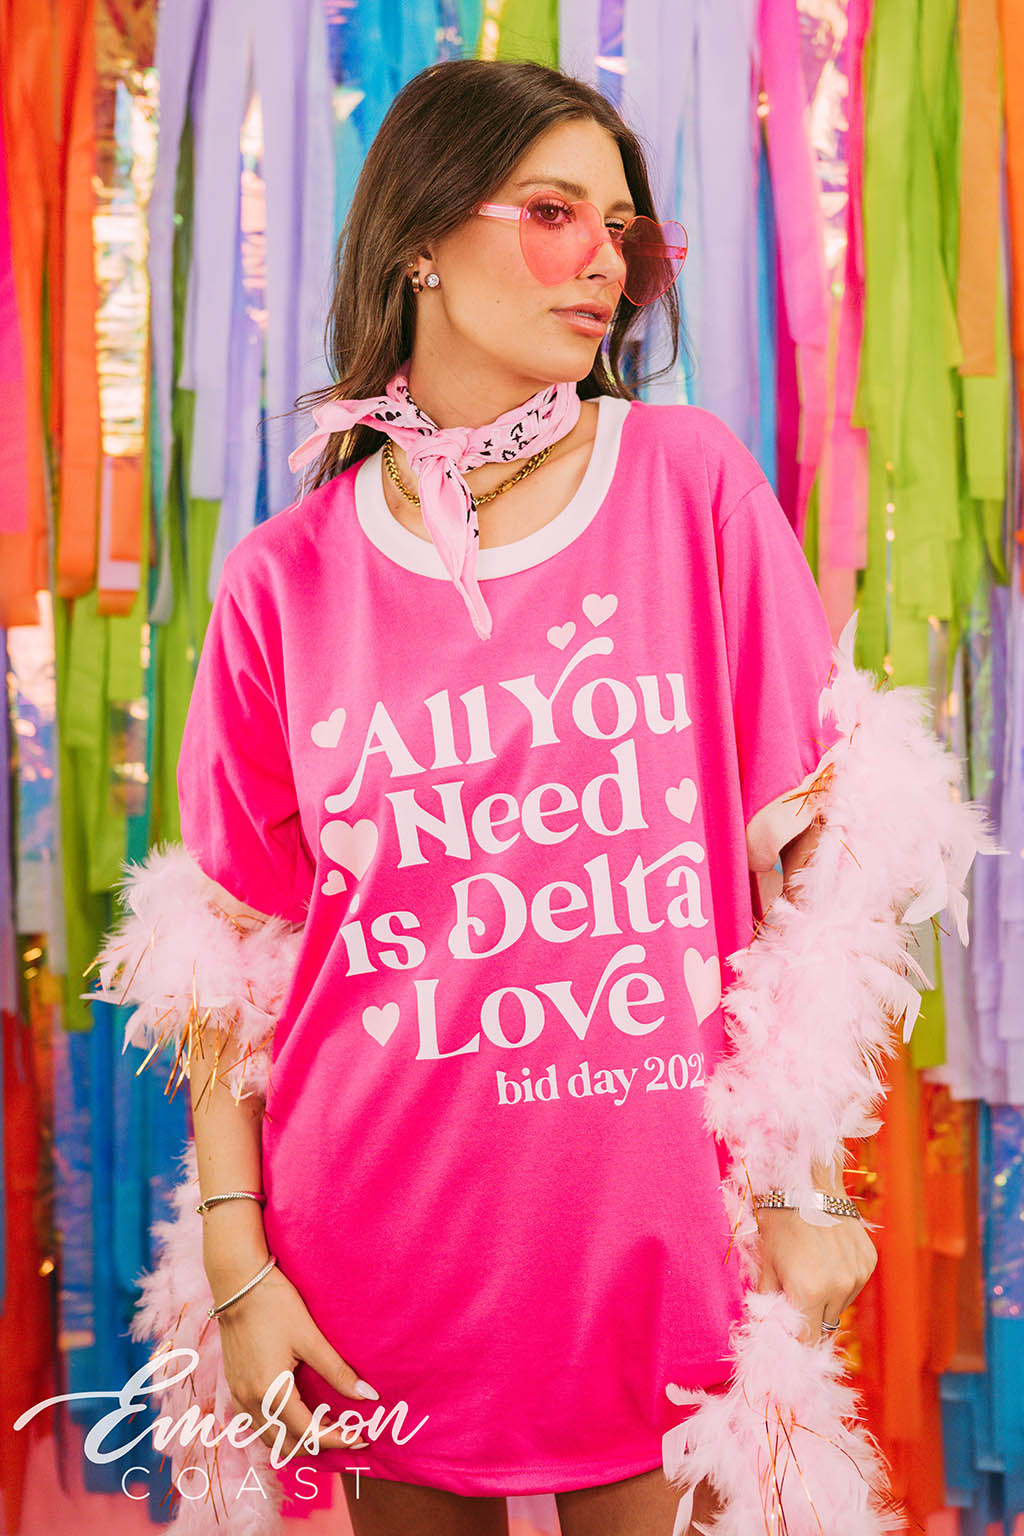 Tri Delta All You Need is Delta Love Bid Day